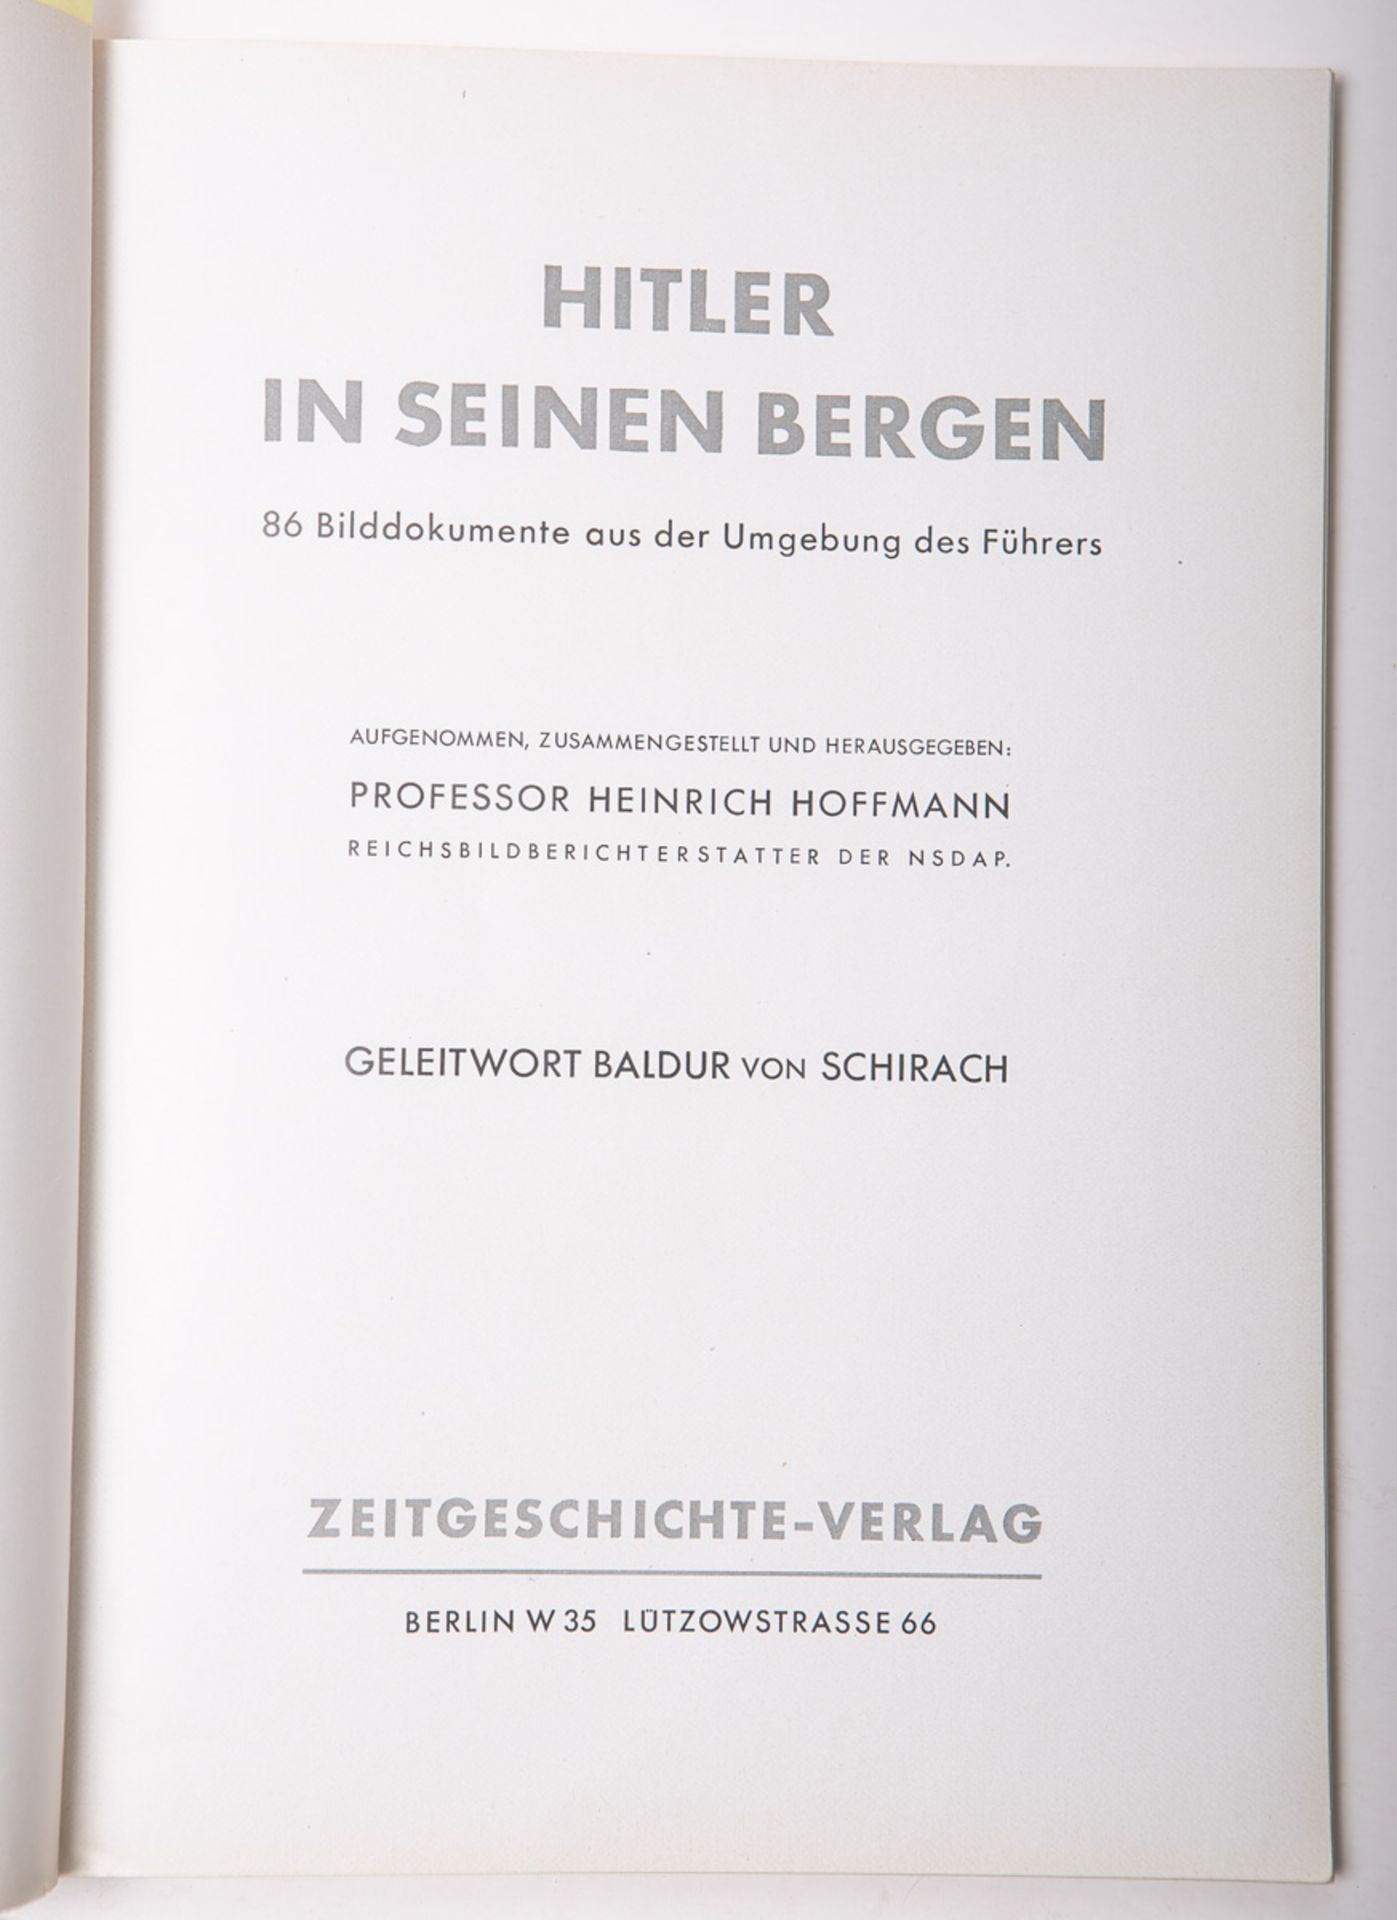 Hoffmann, Heinrich (Hrsg.), "Hitler in seinen Bergen"